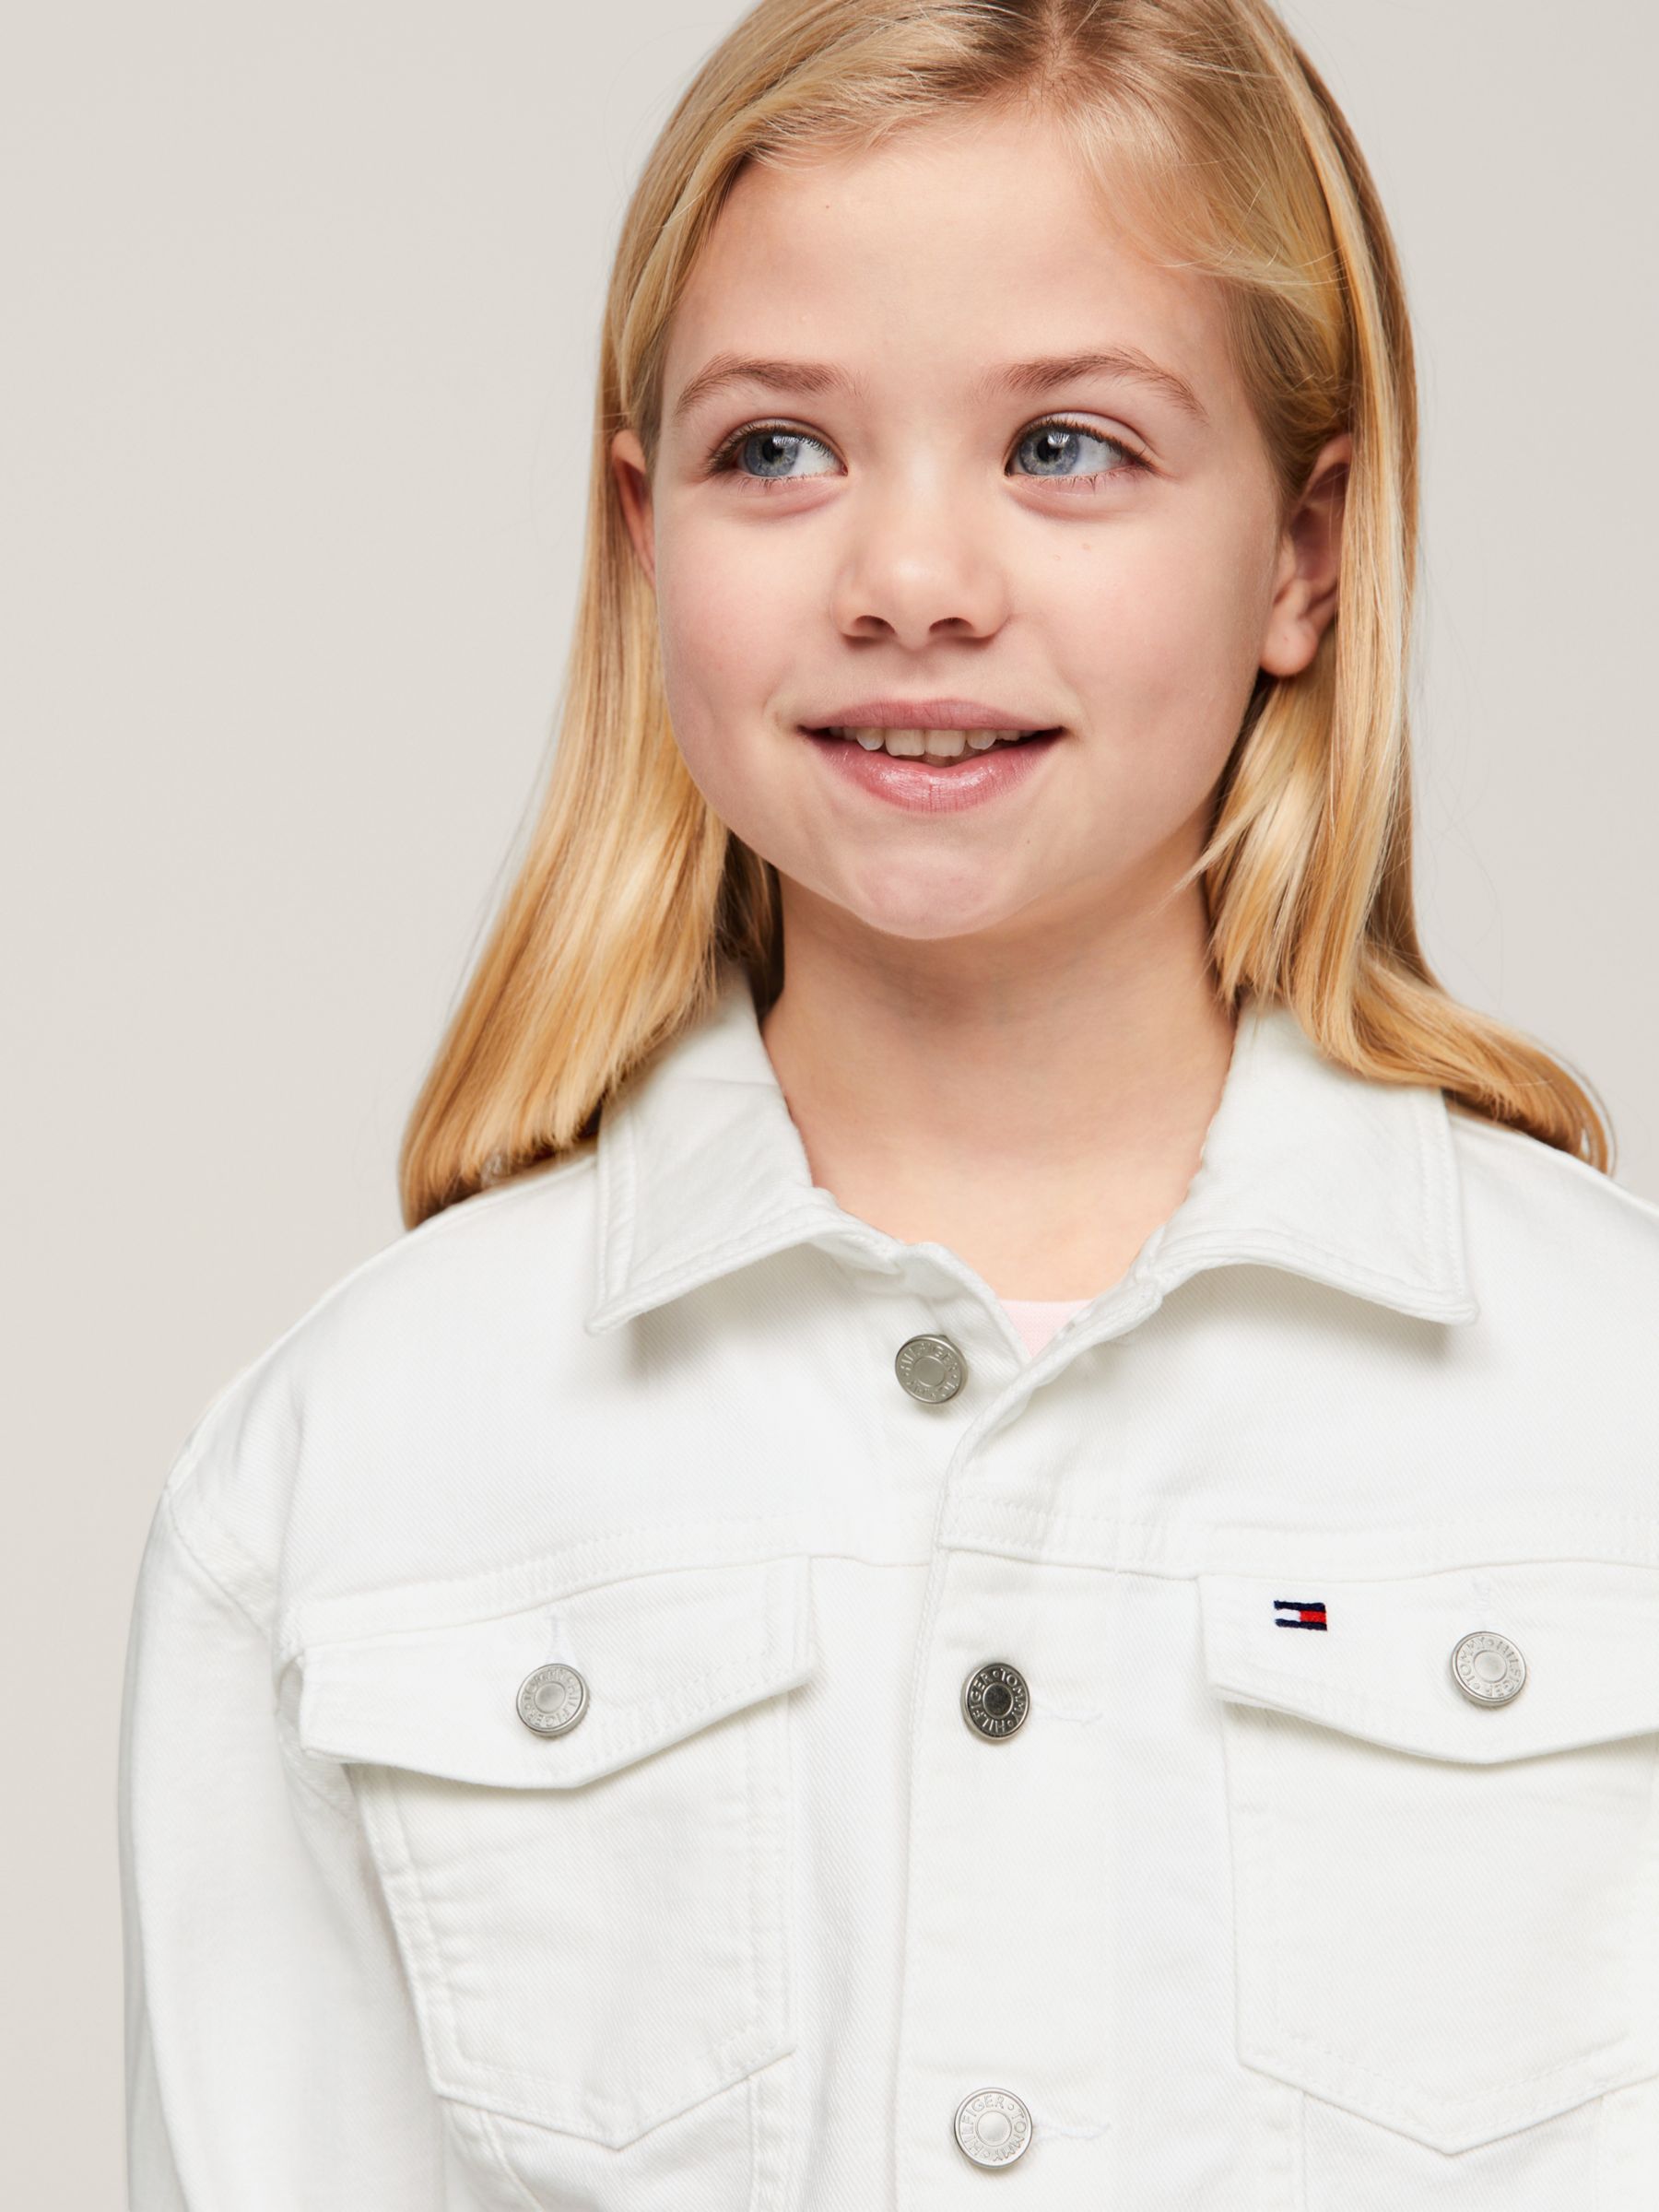 Tommy Hilfiger Kids' Denim Trucker Jacket, White, 10 years